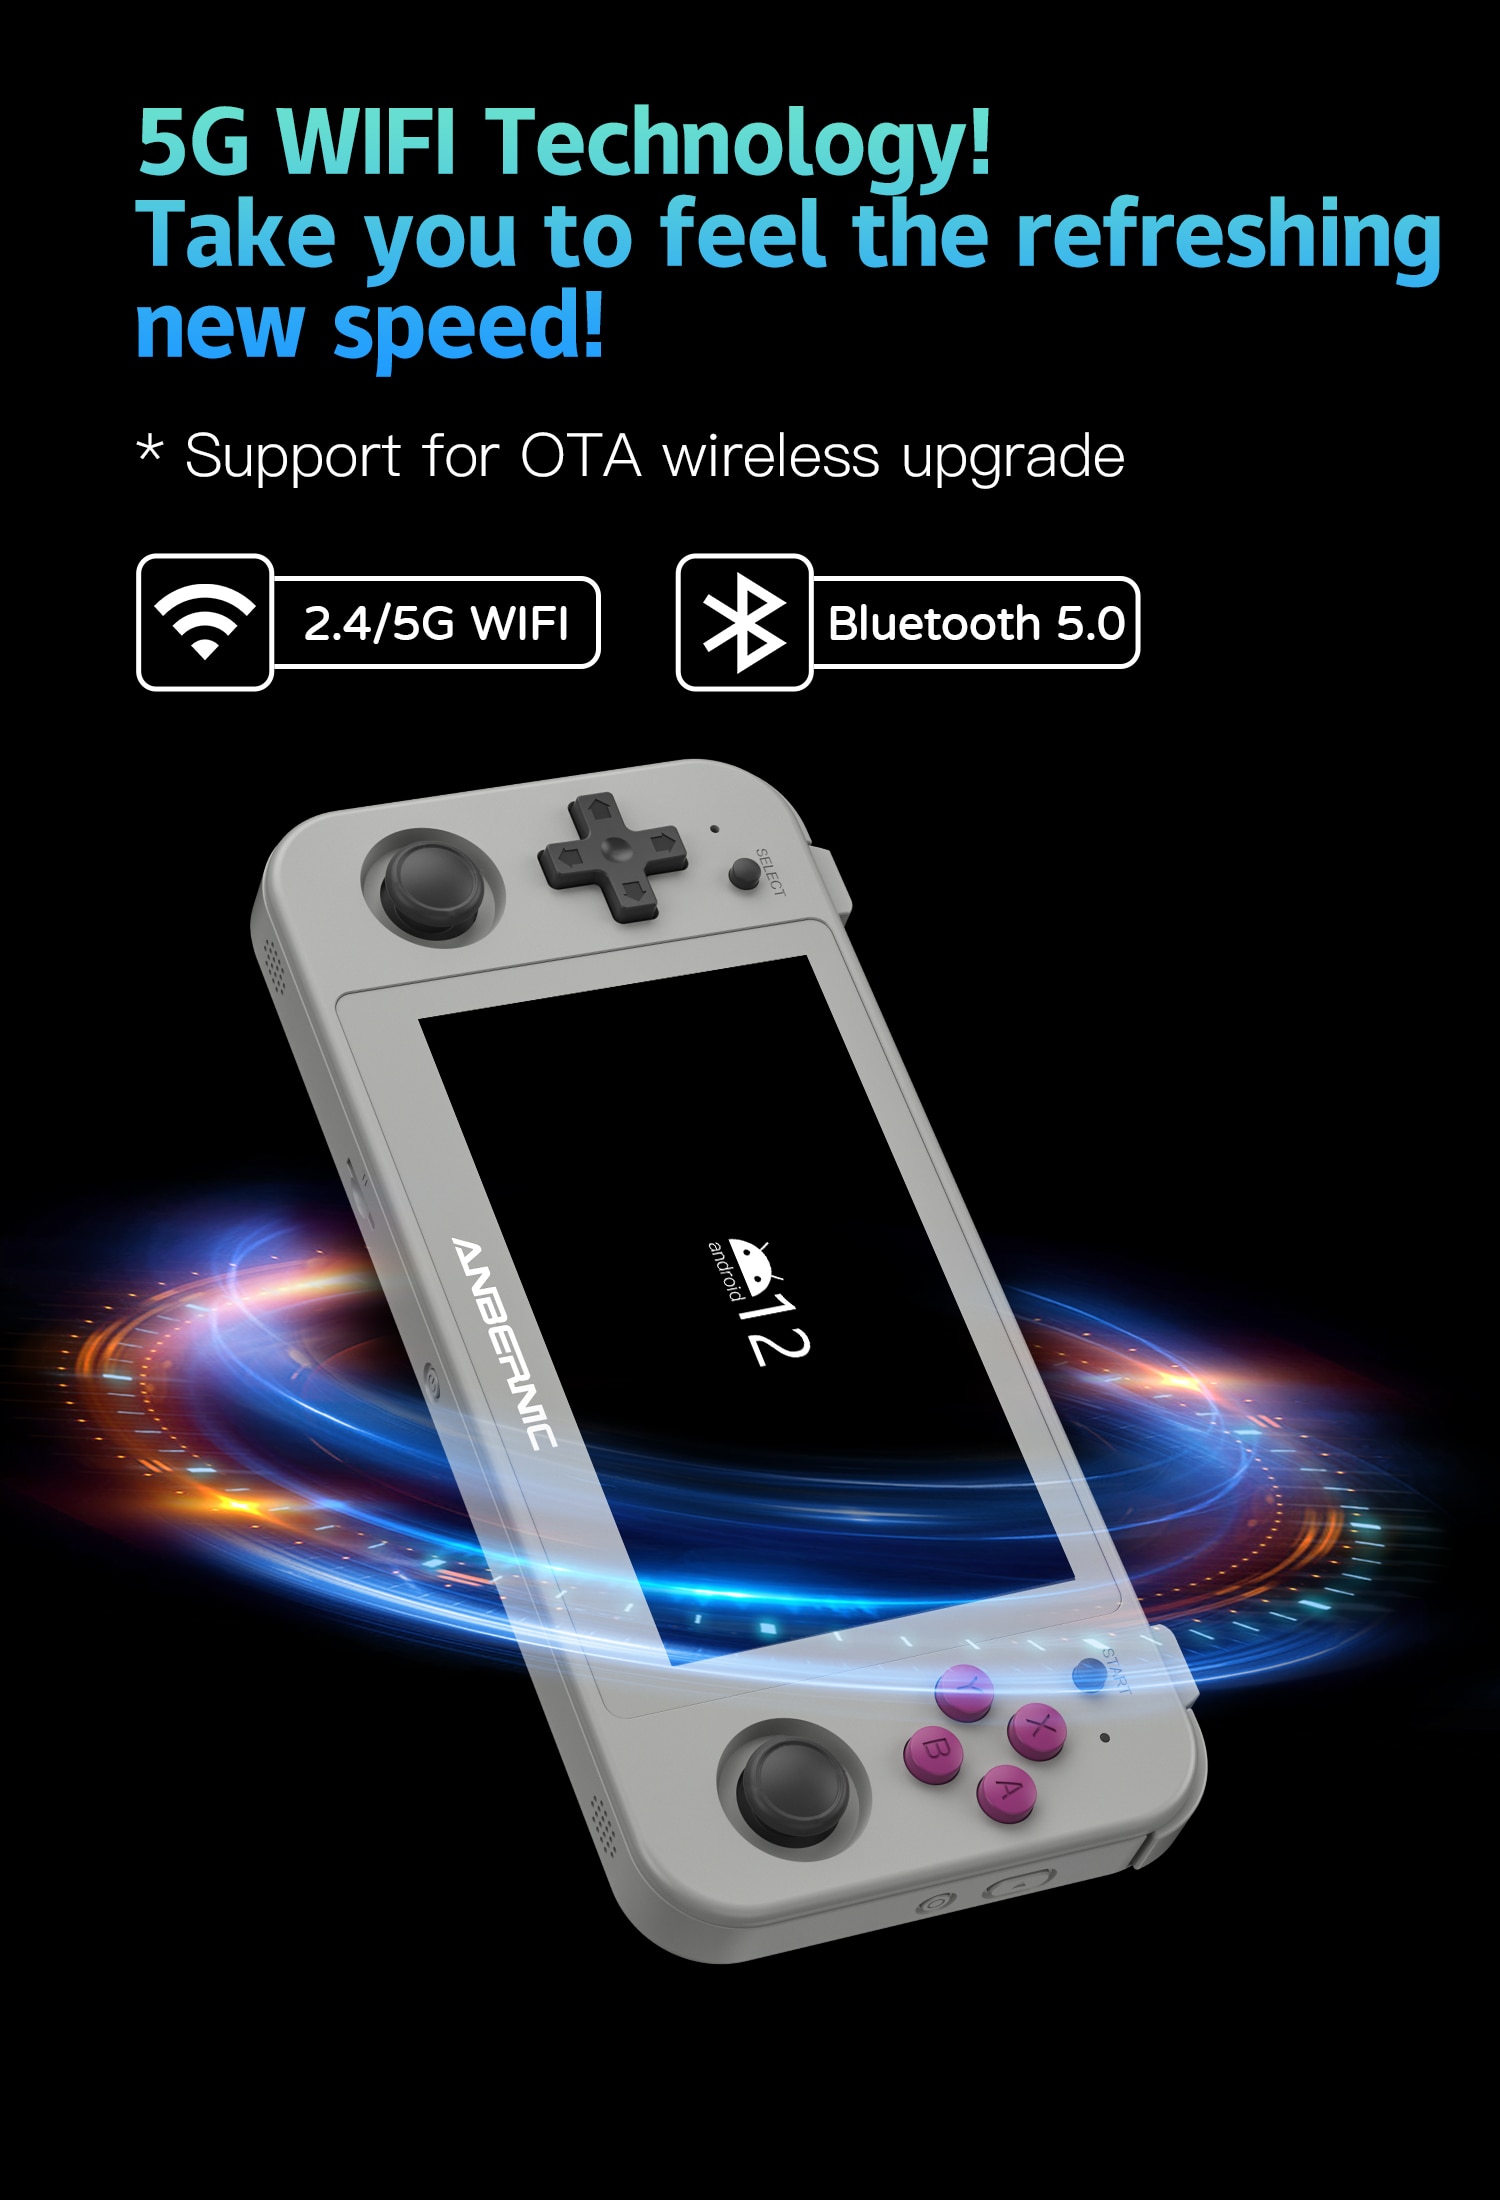 ANBERNIC RG505 Console portátil de jogos com sistema operacional Android 12